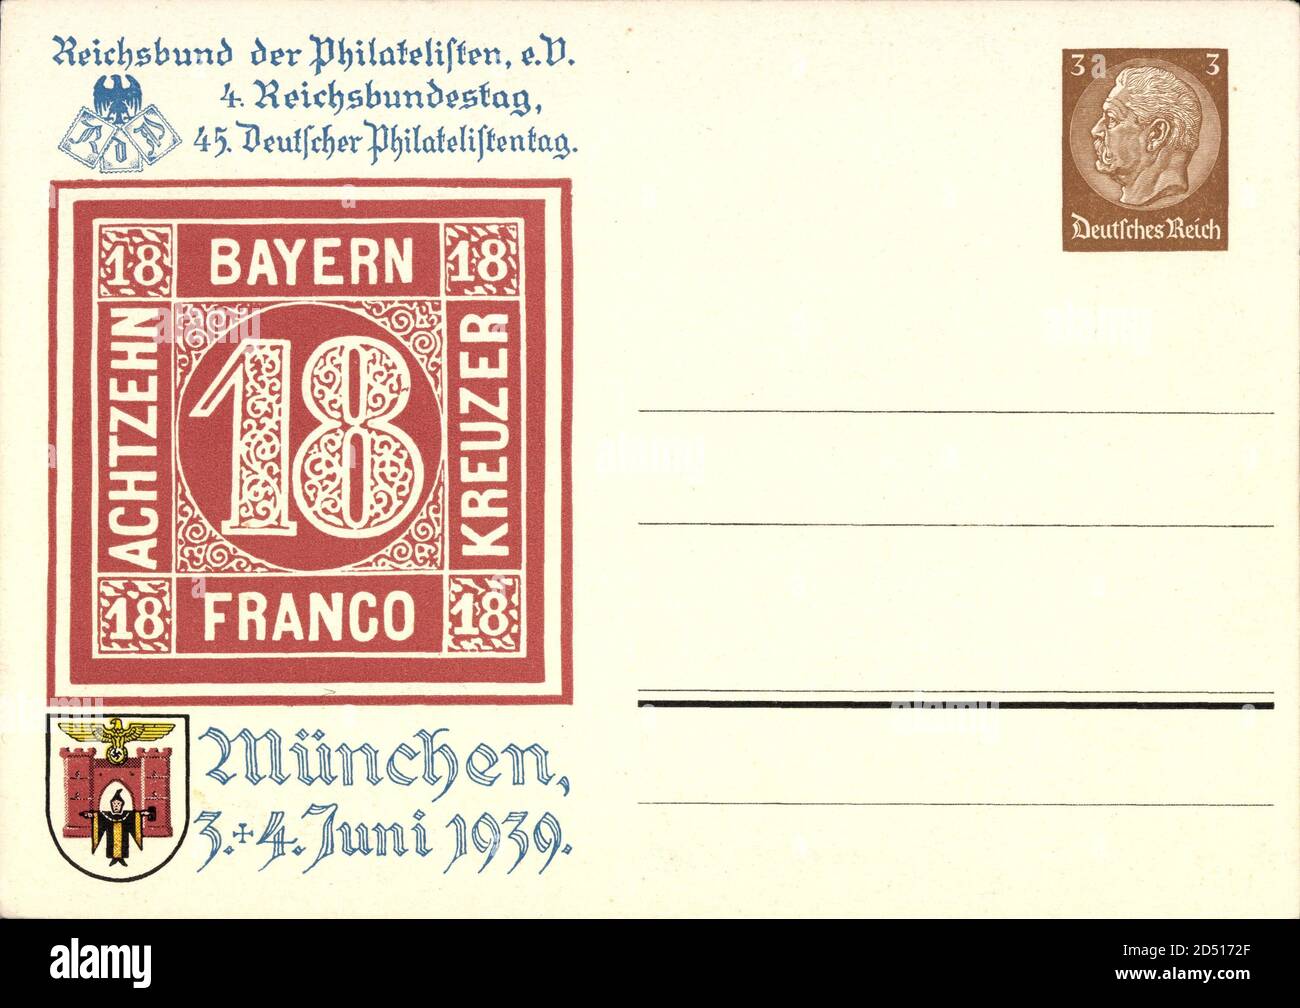 Briefmarken Reichsbund der Philatelisten, 4 Reichsbundestag, München 1939 | usage worldwide Stock Photo